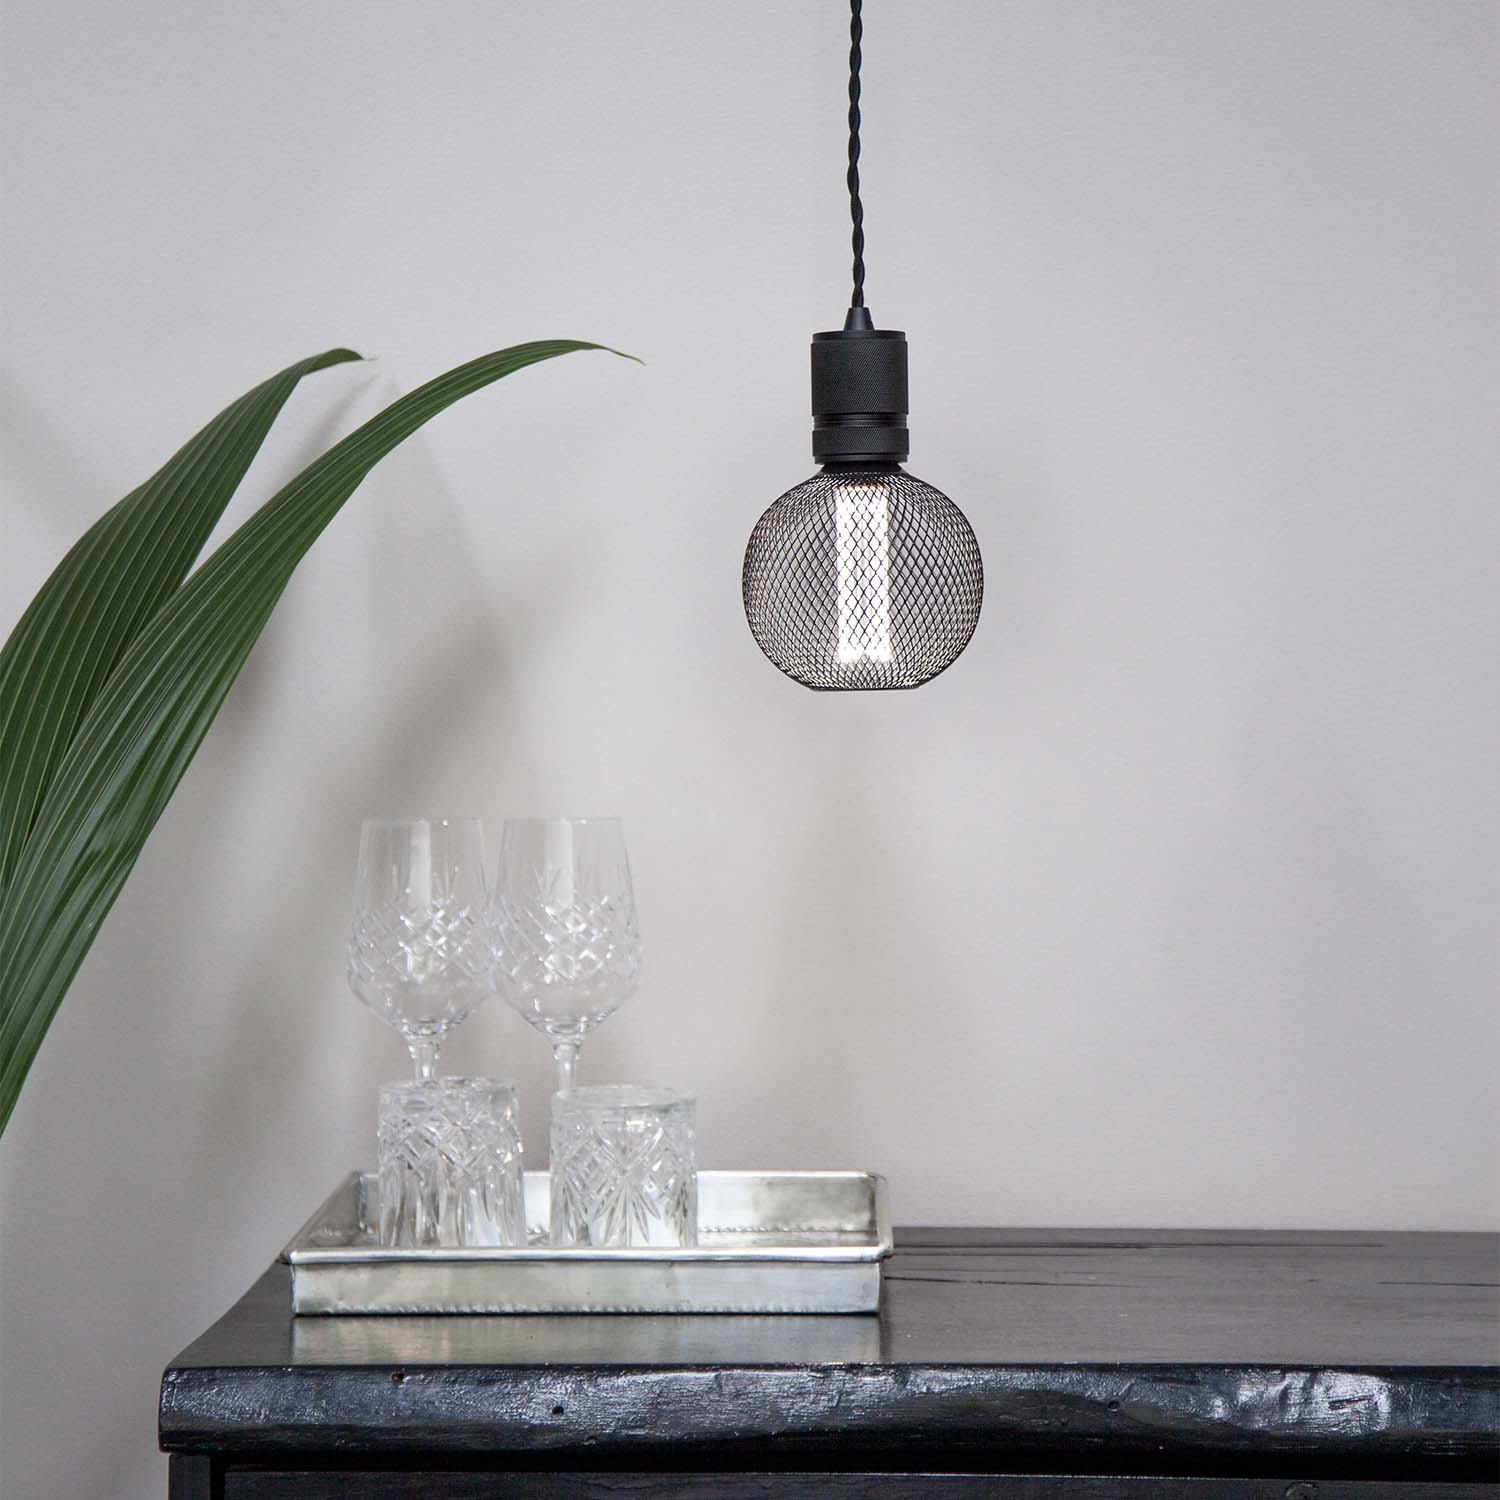 Gitter - Ampoule LED E27 design grille noire